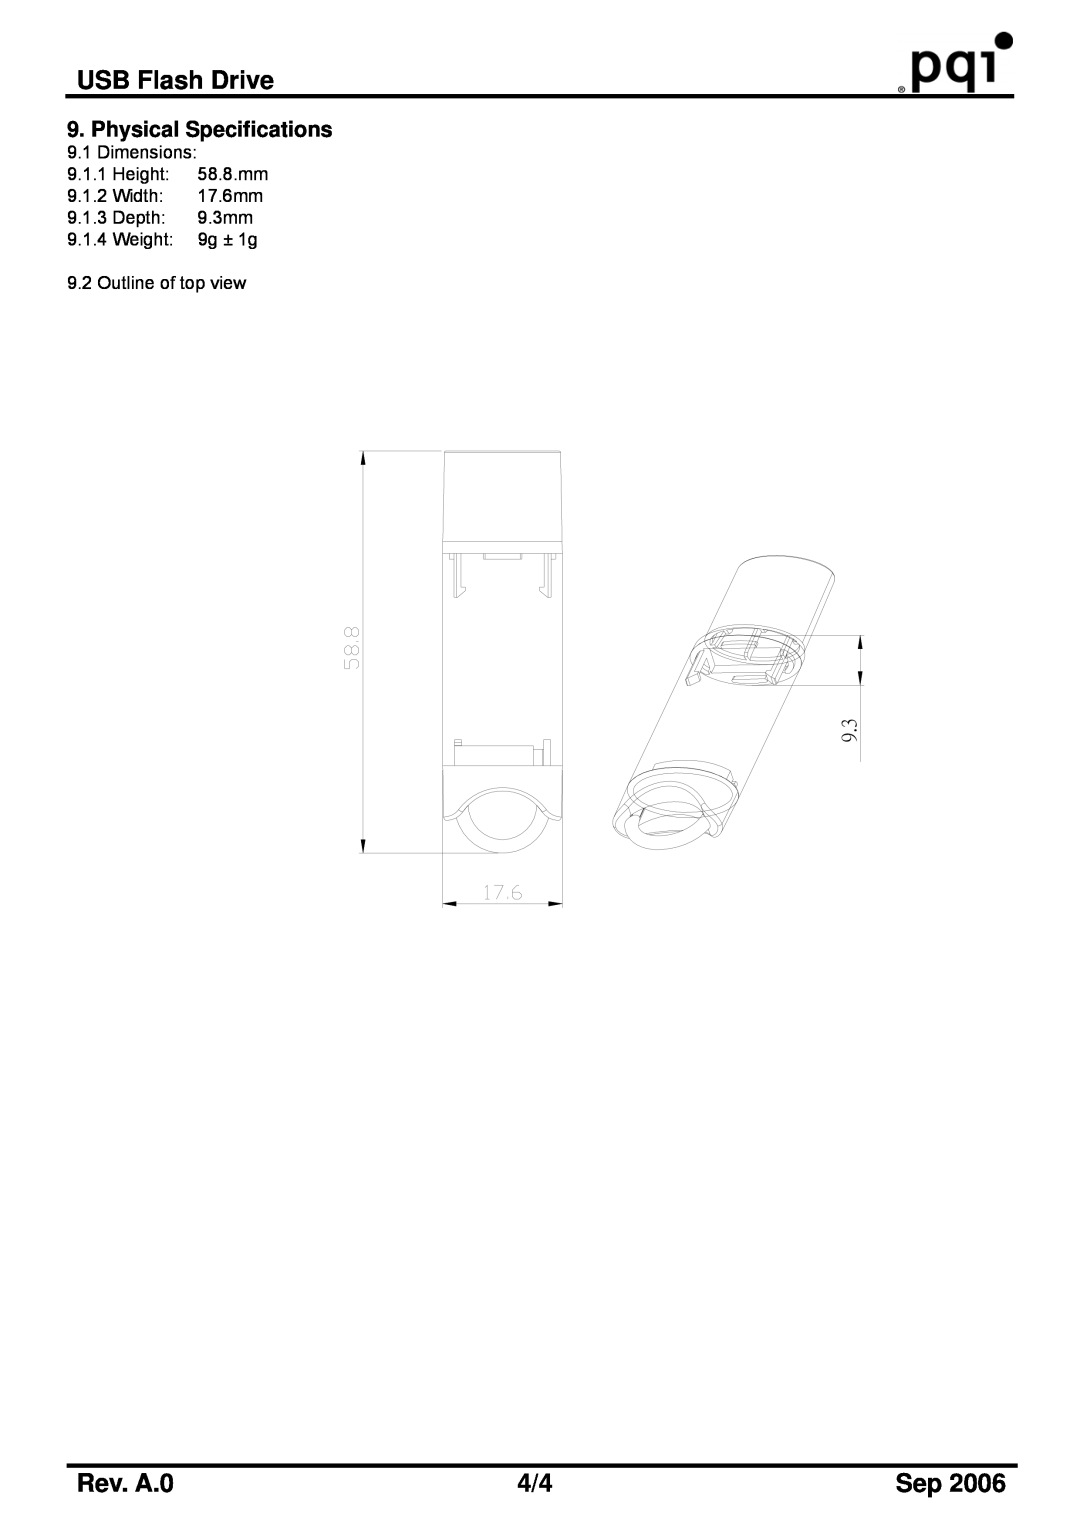 PQI U172 manual USB Flash Drive, Rev. A.0, Dimensions 9.1.1 Height 58.8.mm 9.1.2 Width 17.6mm 